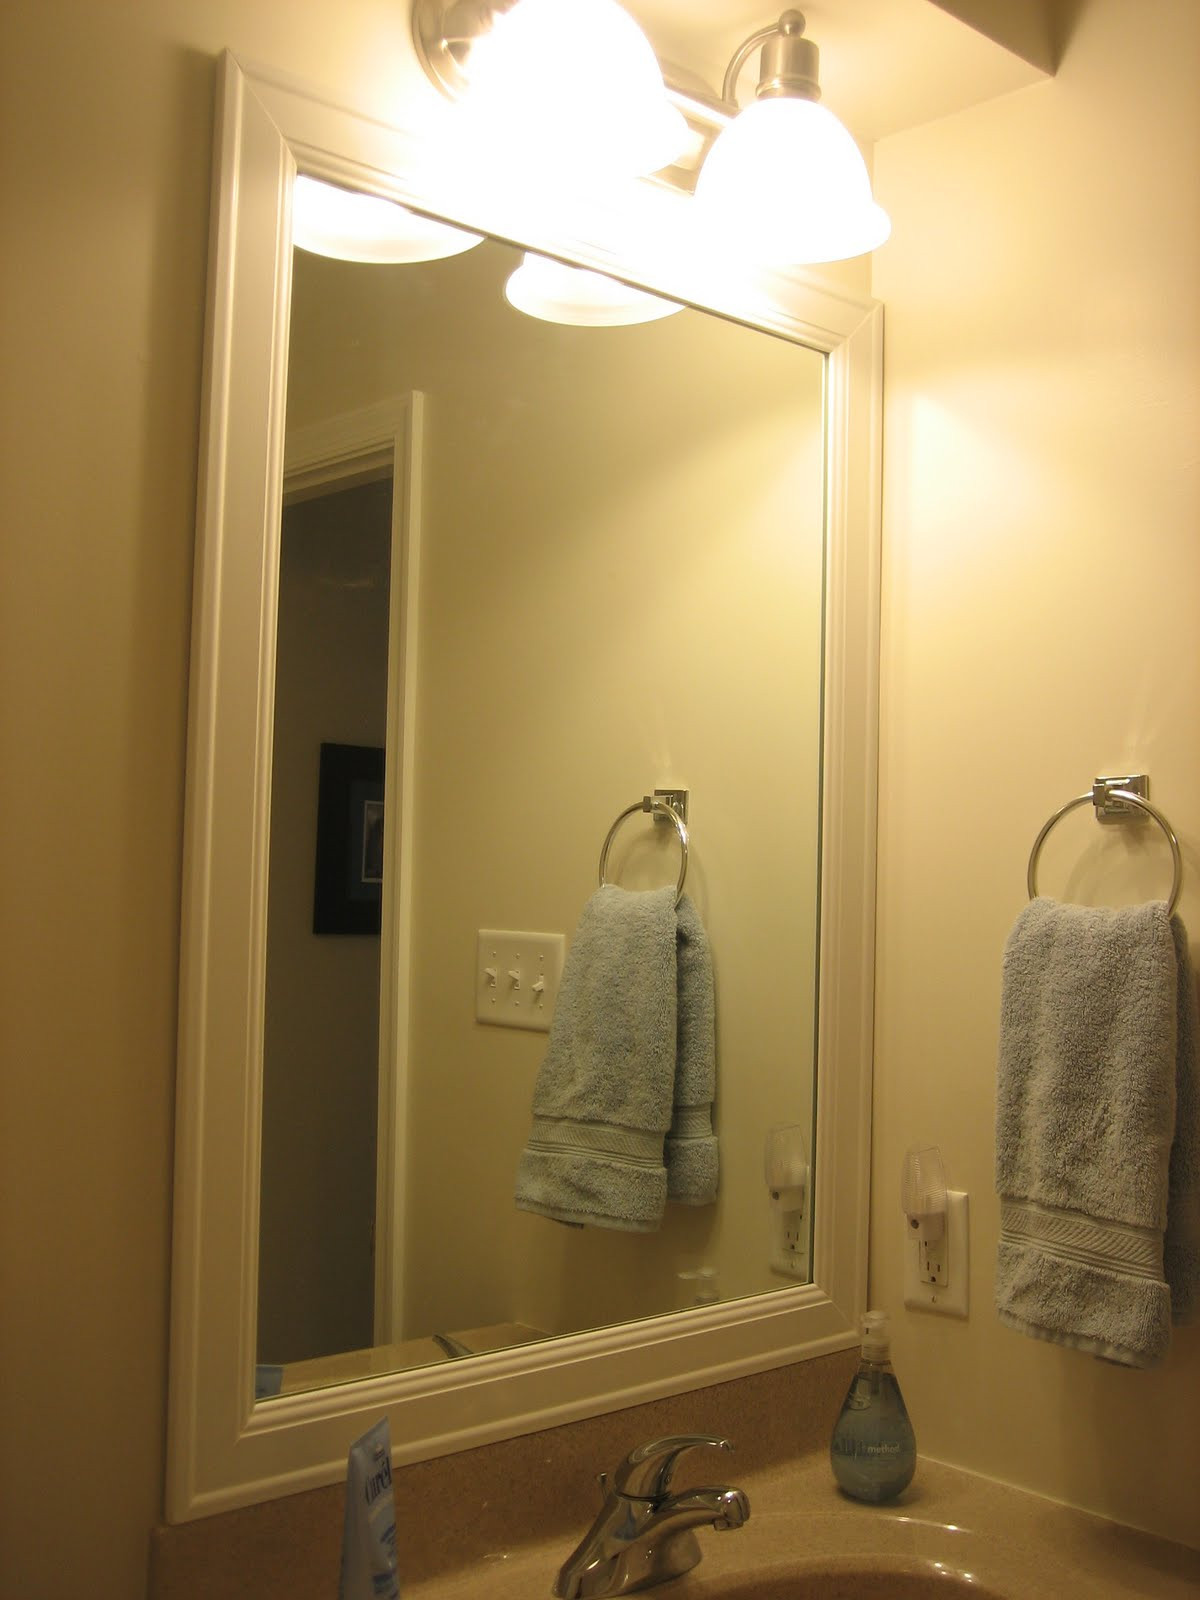 Bathroom Mirrors With Frames
 Elizabeth & Co Framing Bathroom Mirrors